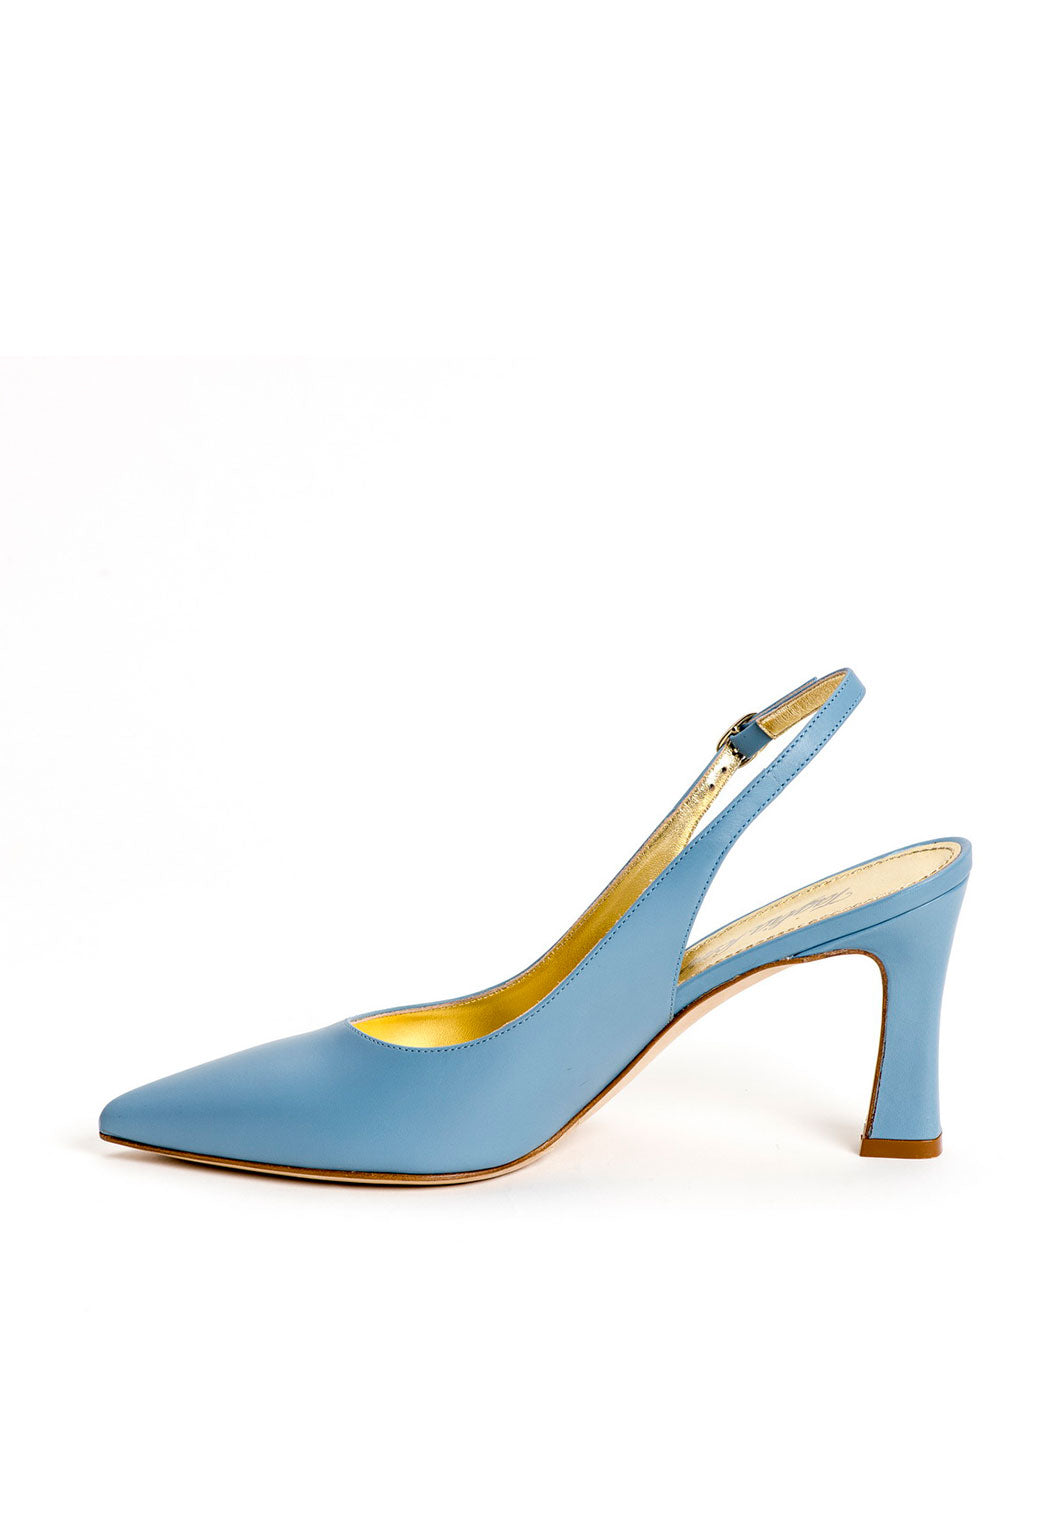 Luxus Schuhe für Damen aus blauem Kalbsleder mit verstellbarem Riemchen an der Ferse. Elegante Damenschuhe von links fotografiert. Offene Pumps in blau.